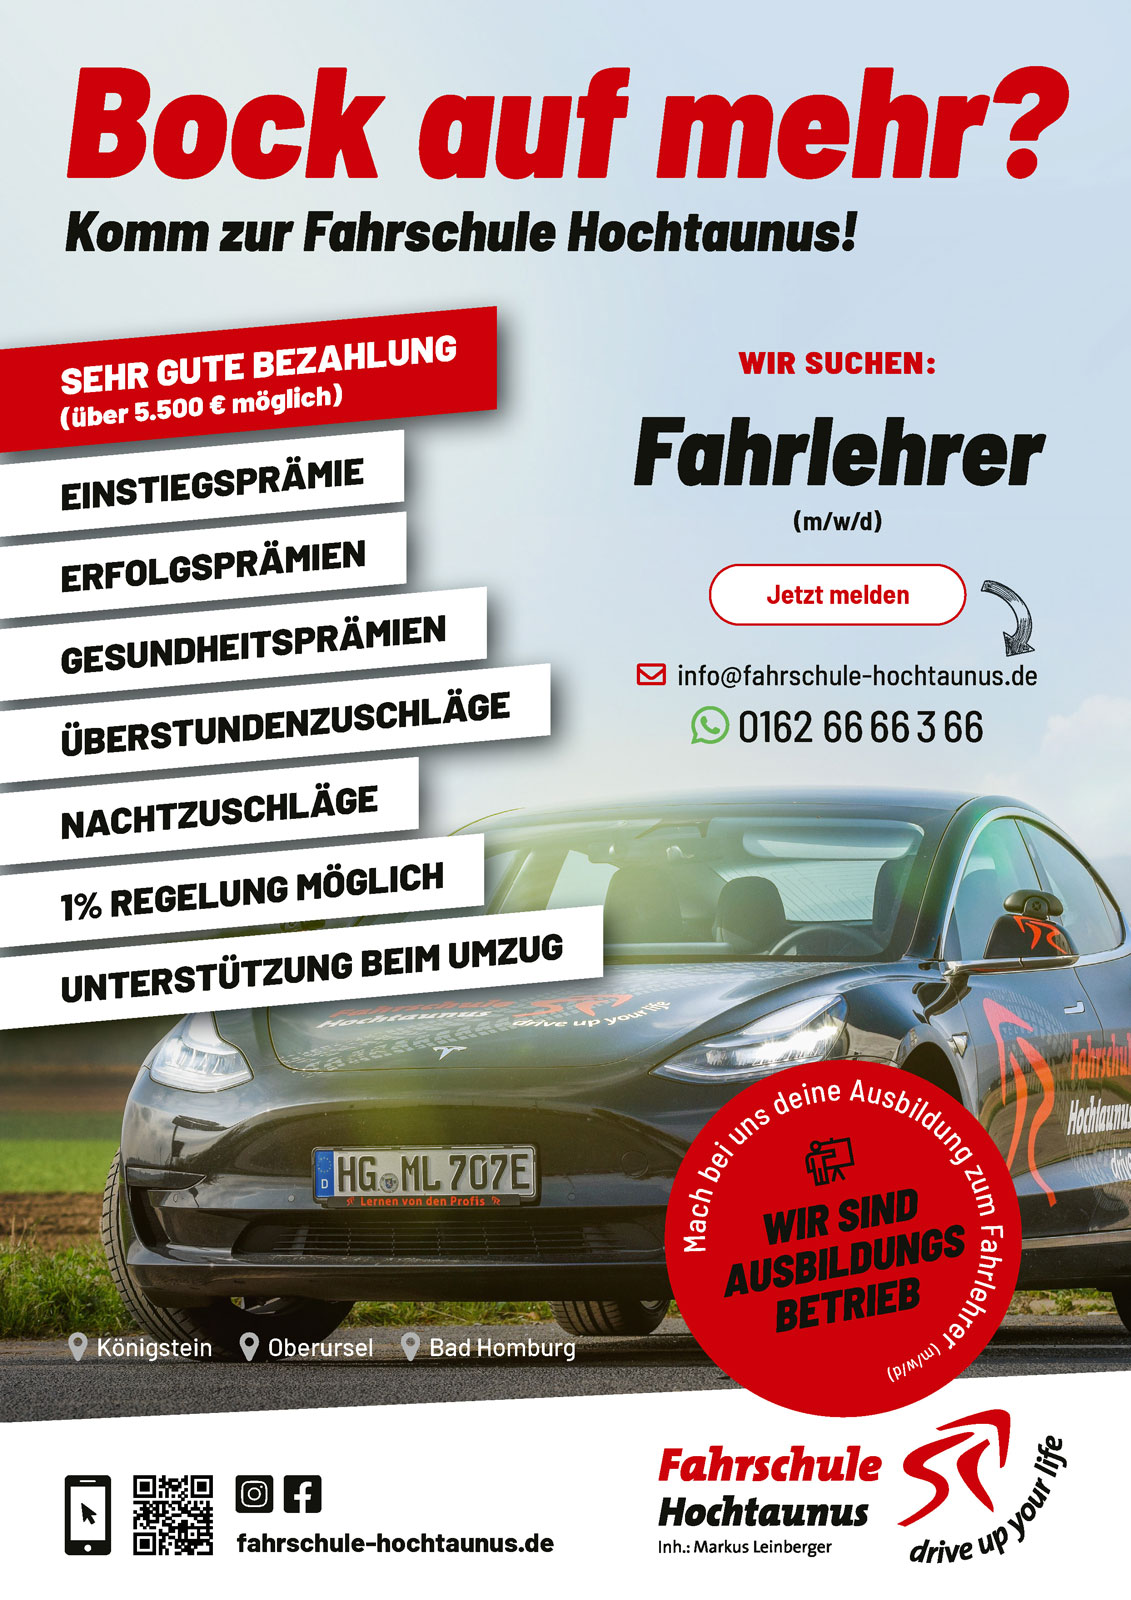 Fahrlehrer (m/w/d) in Vollzeit gesucht bei der Fahrschule Hochtaunus in Königstein, Oberursel und Bad Homburg